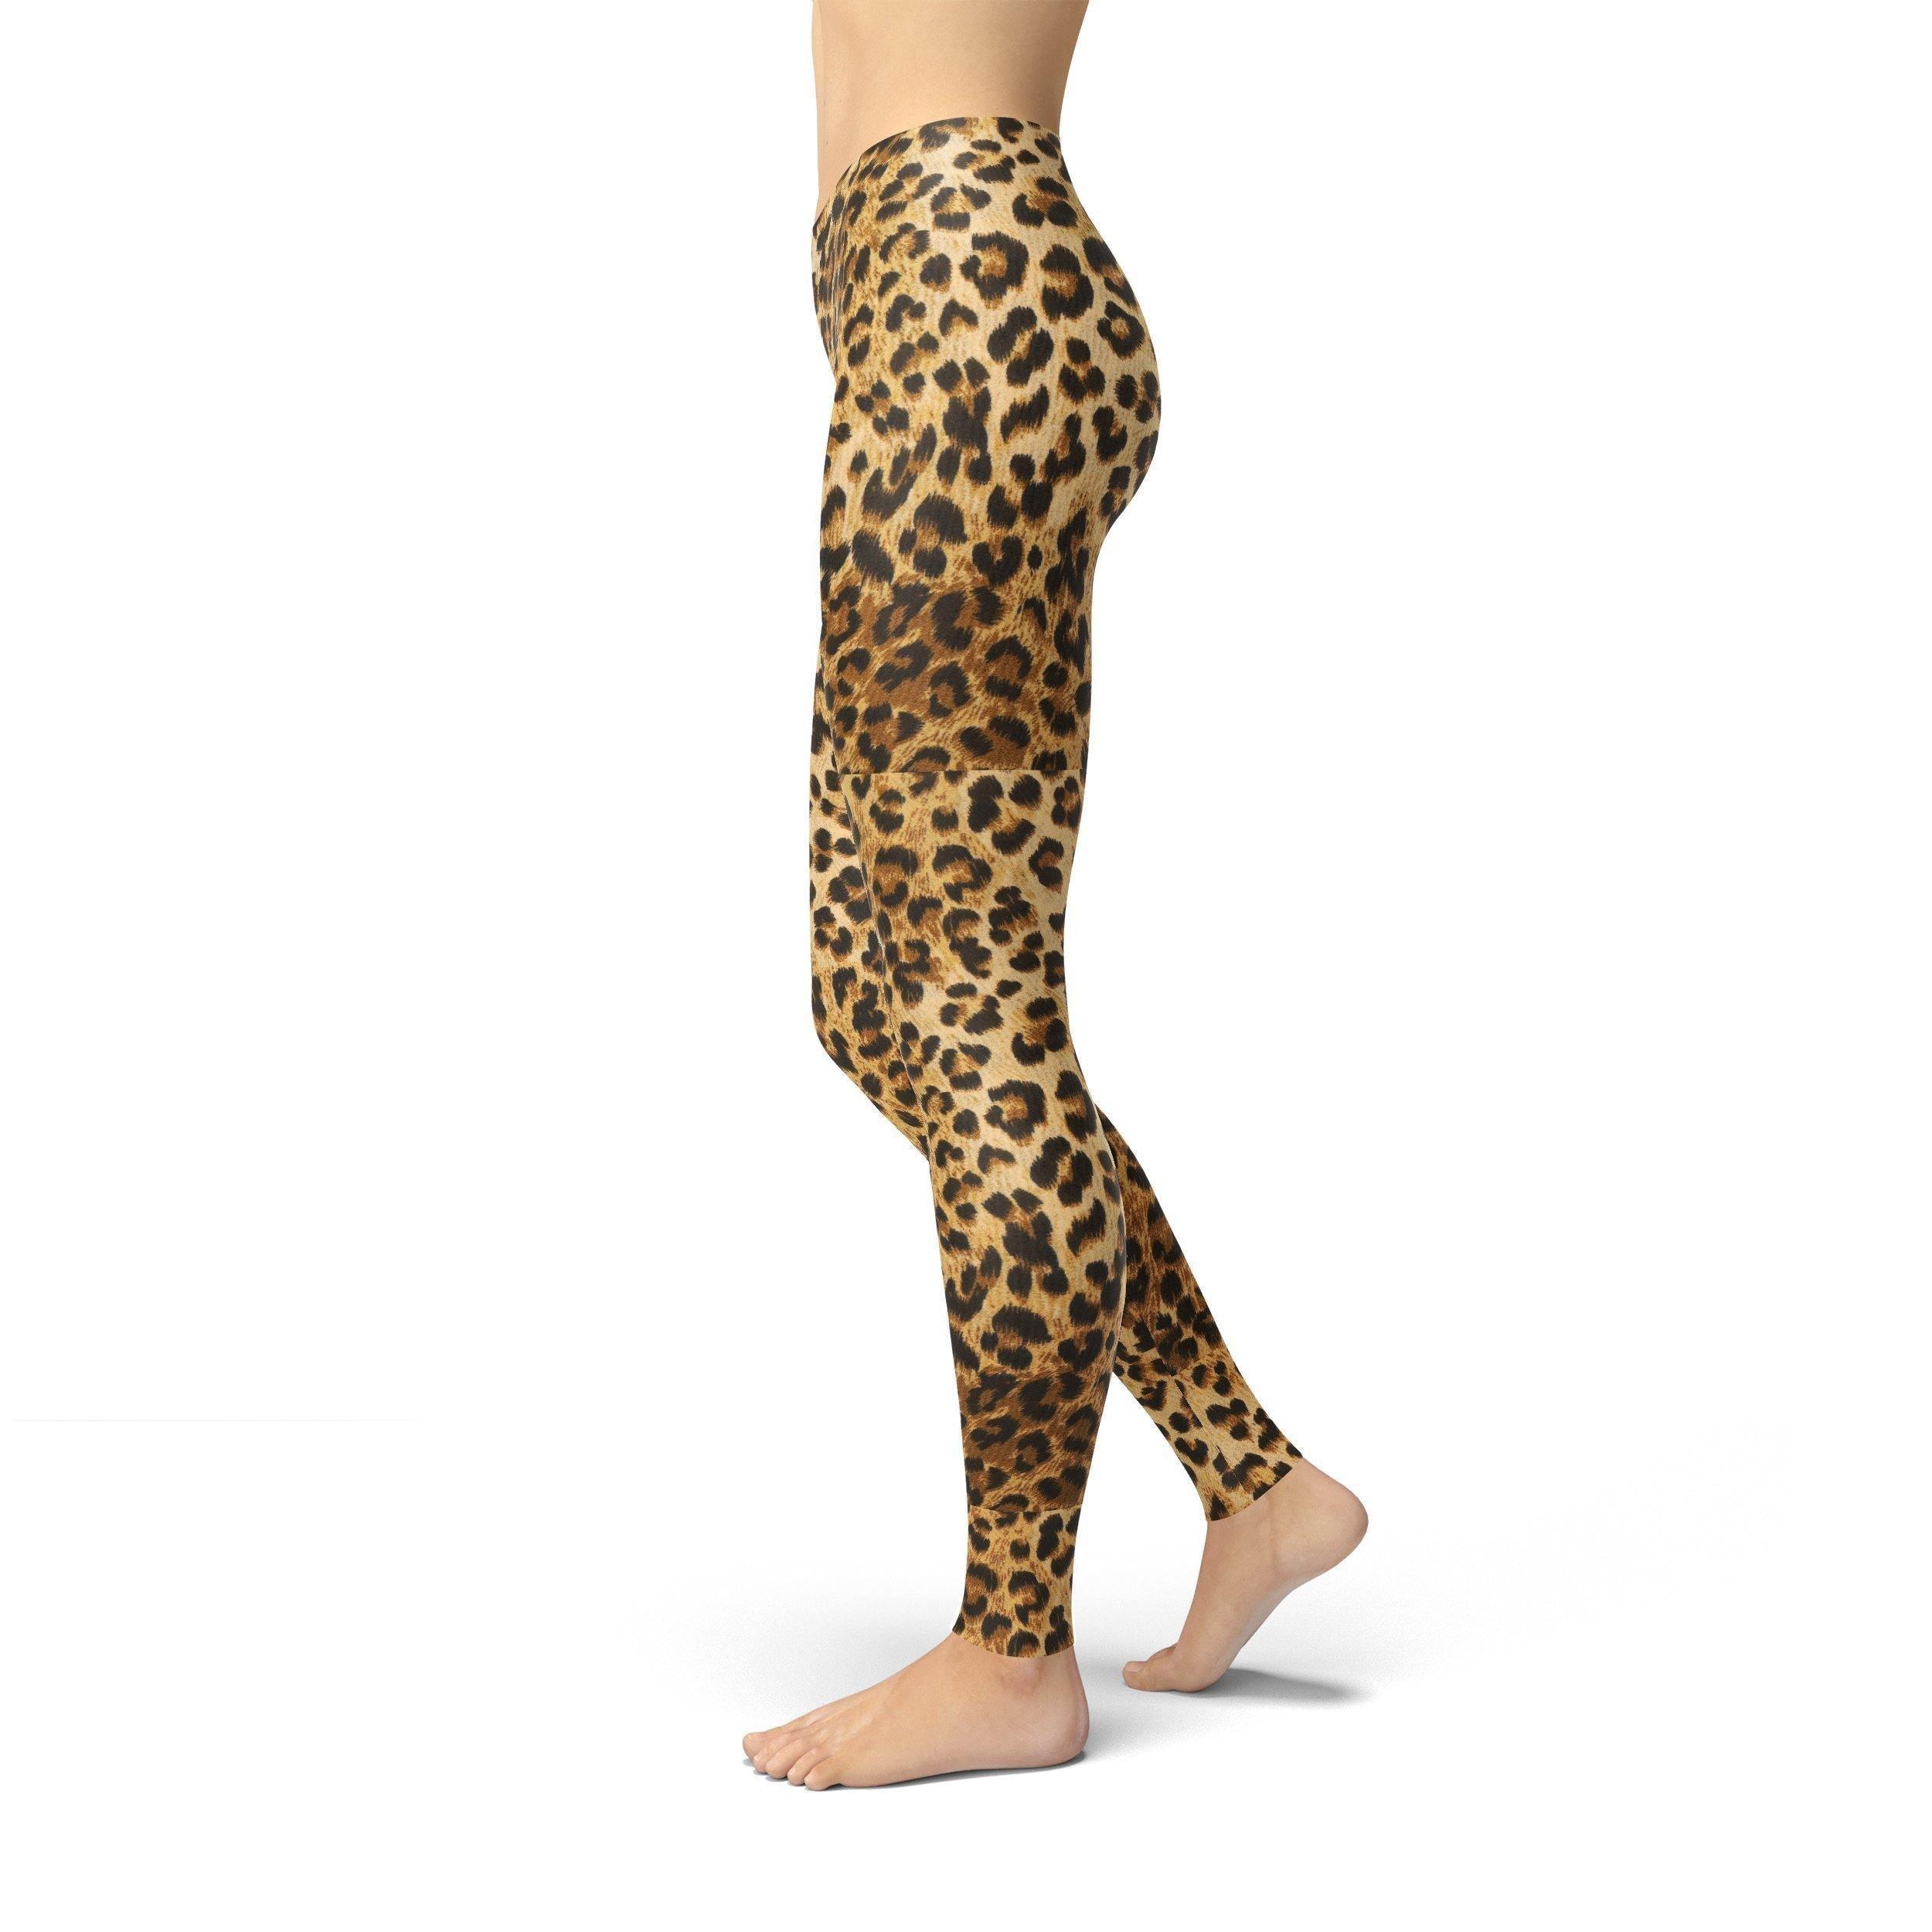 Jean Leopard Print Leggings - fashion$ense-6263